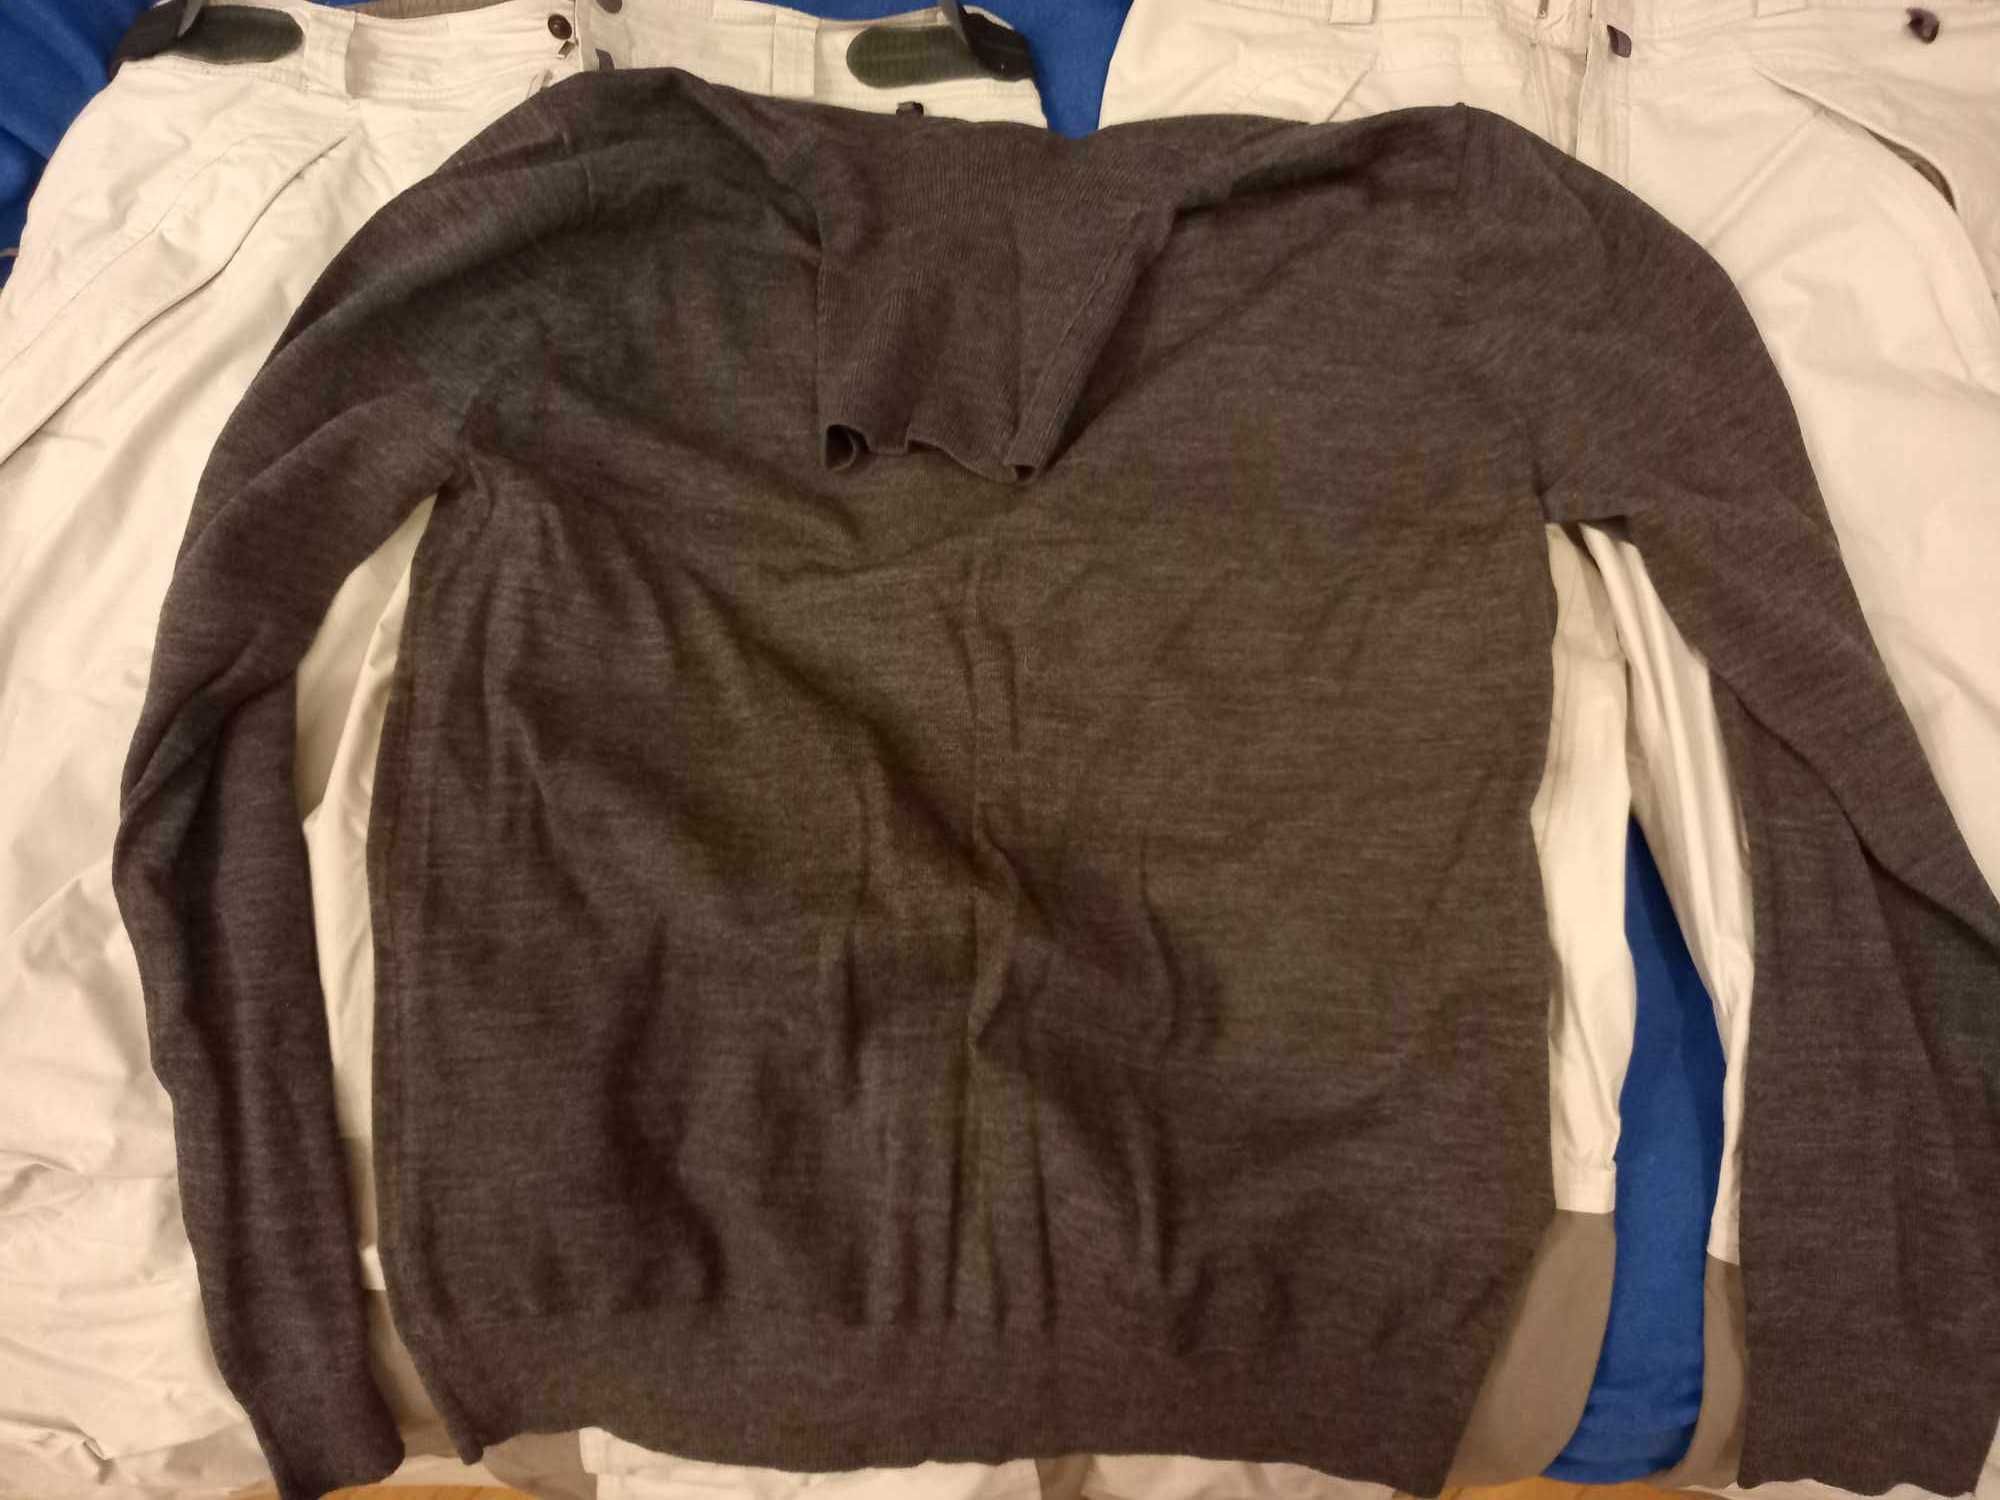 Kurtka, spodnie narciarskie i odzież termiczna (sweter)